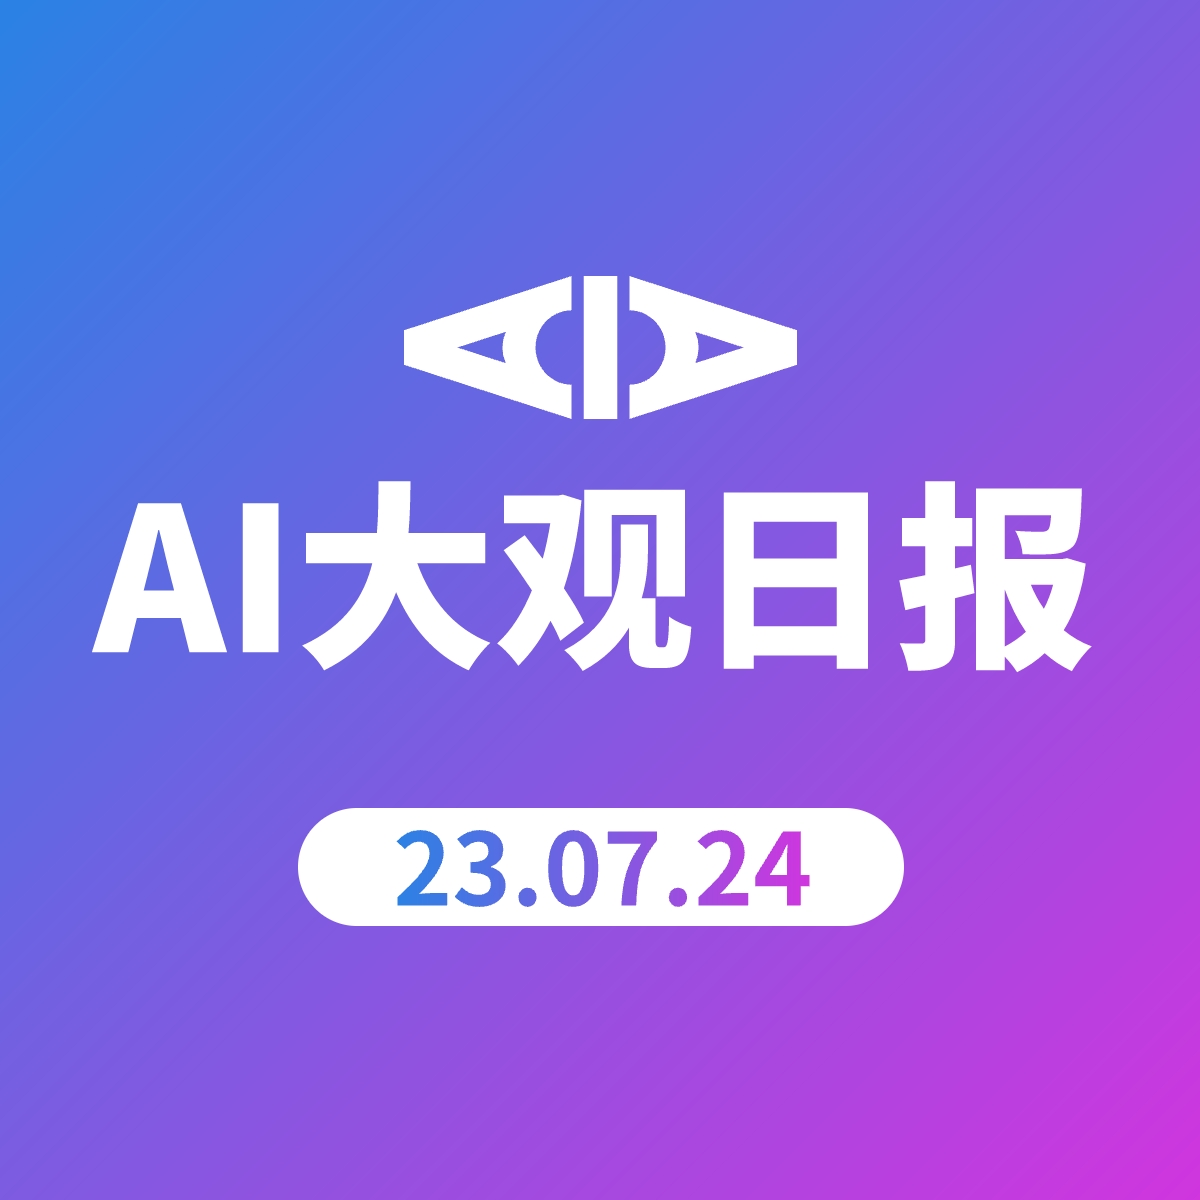 AI大观日报 | 23.07.24